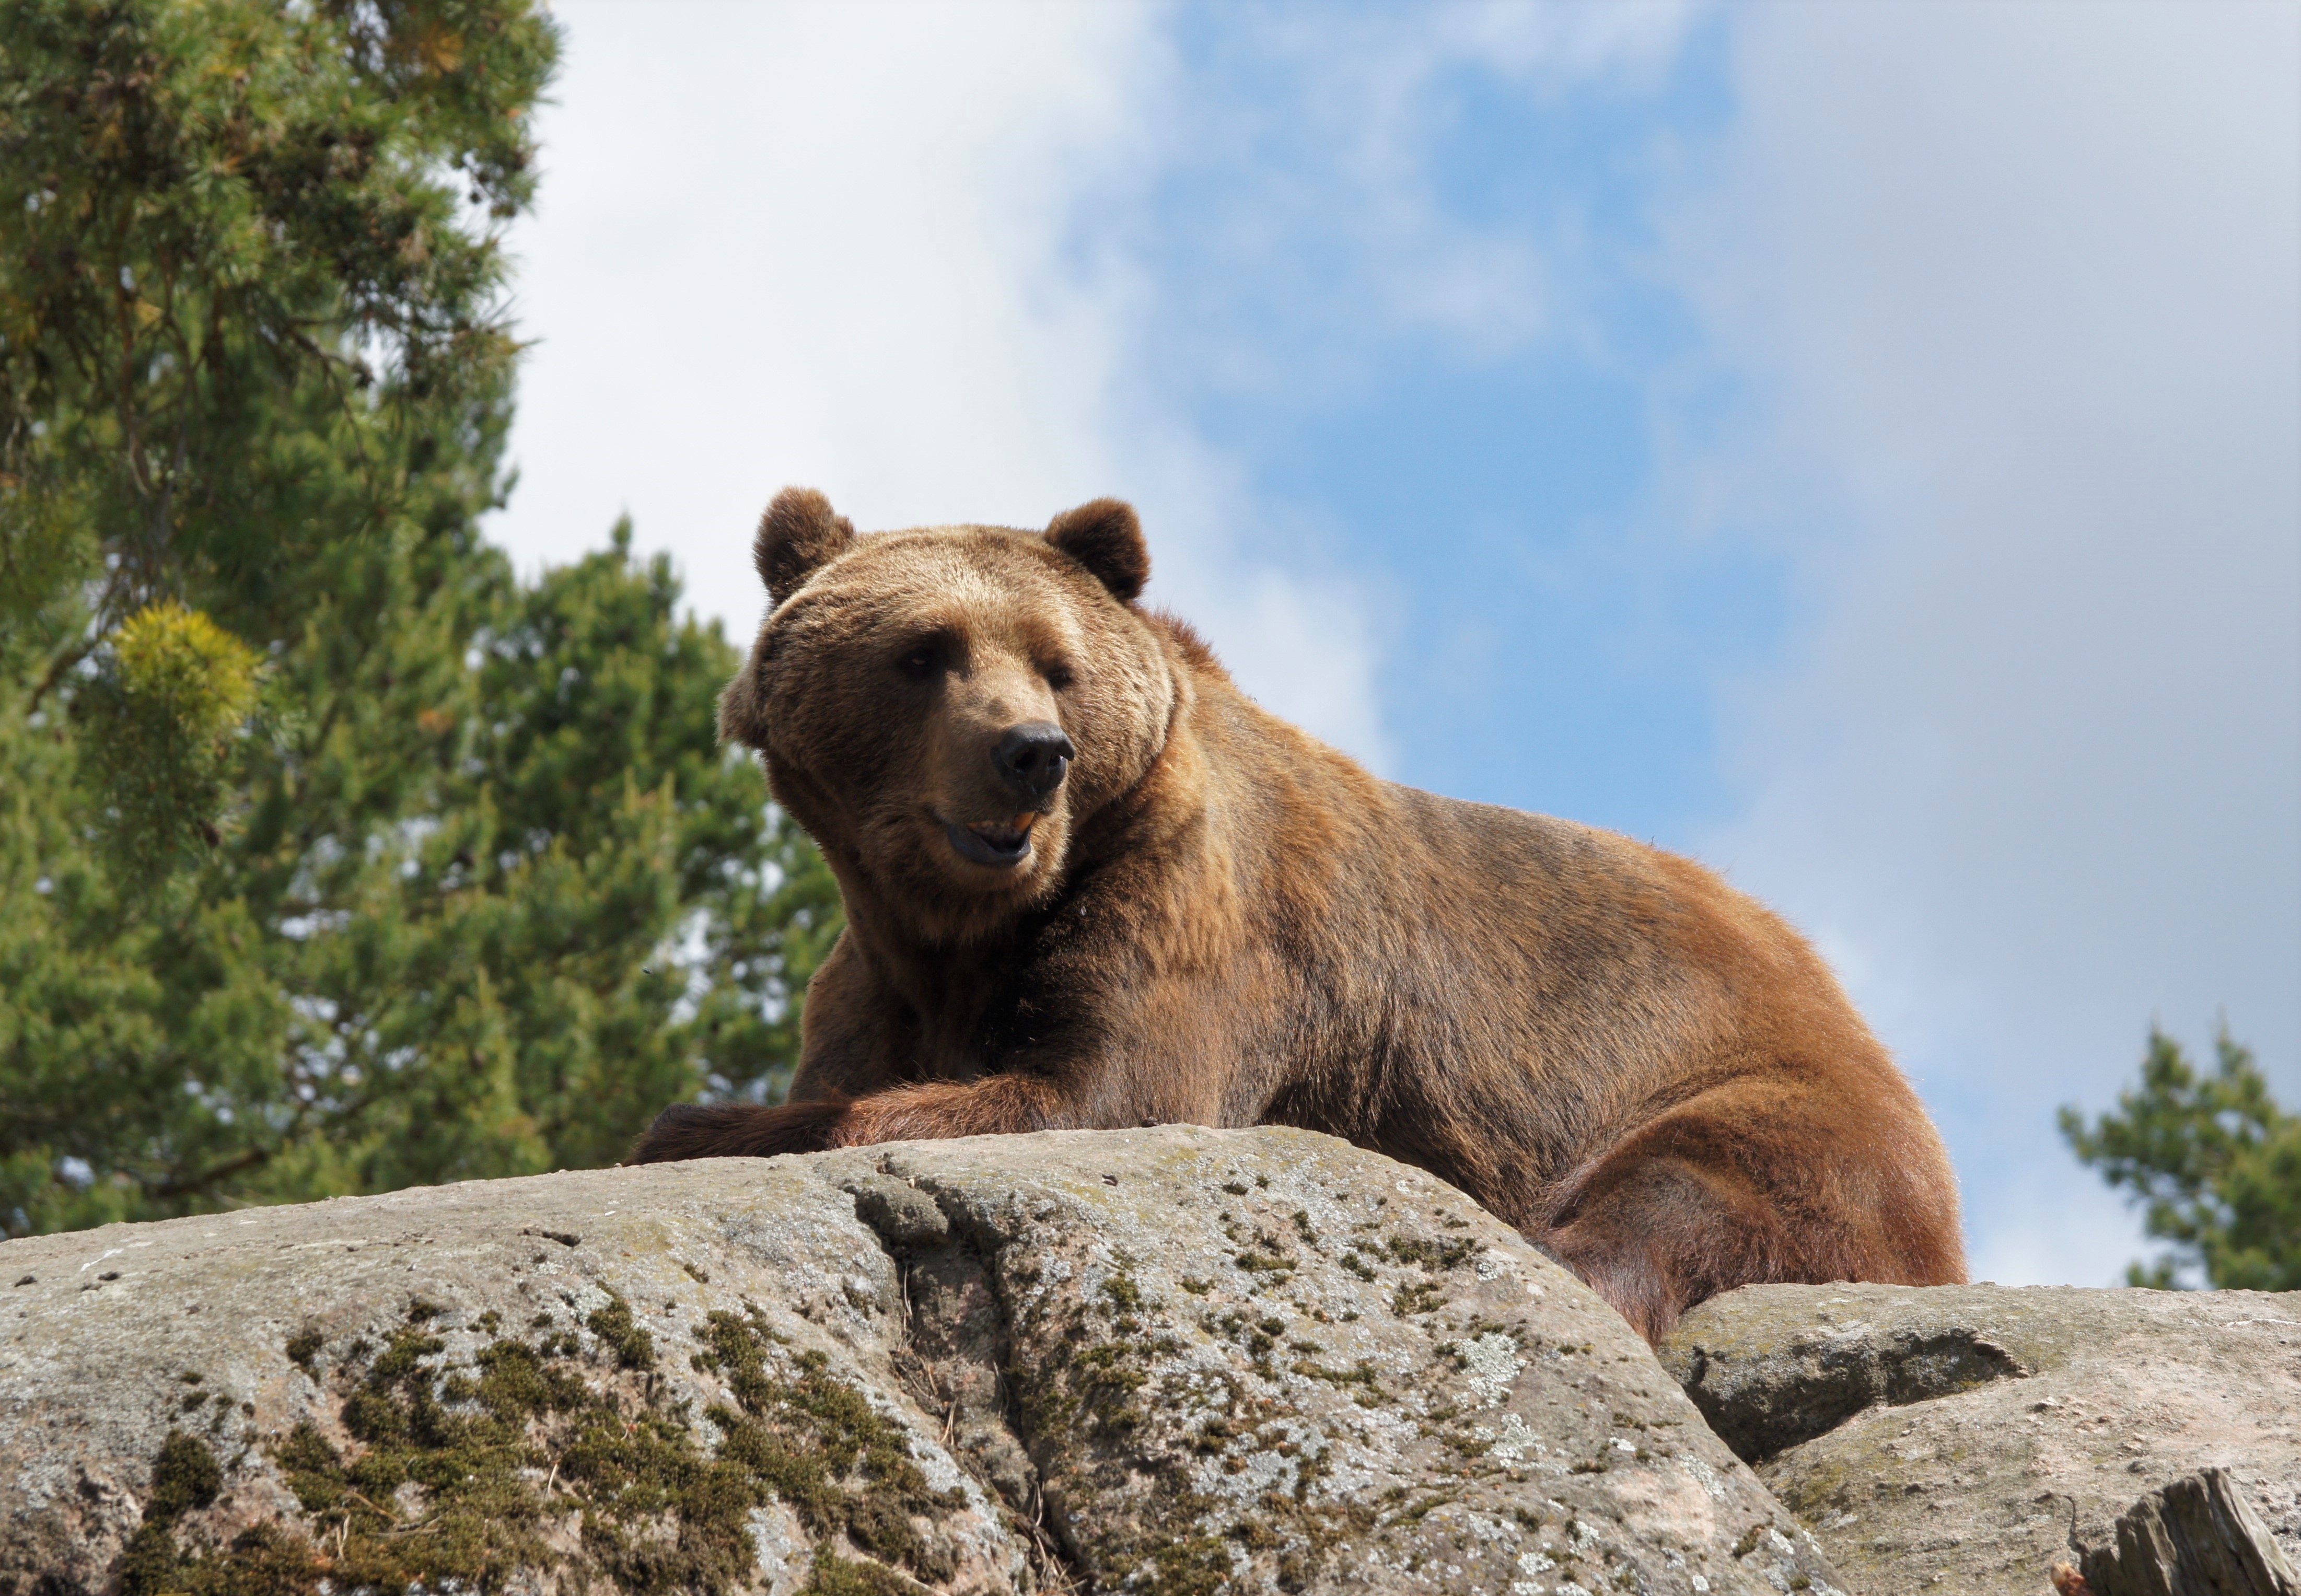 Есть я у камня у зверя. Каменный медведь. Солнечный медведь. Обои с медвежатами. Камчатский медведь на камнях.